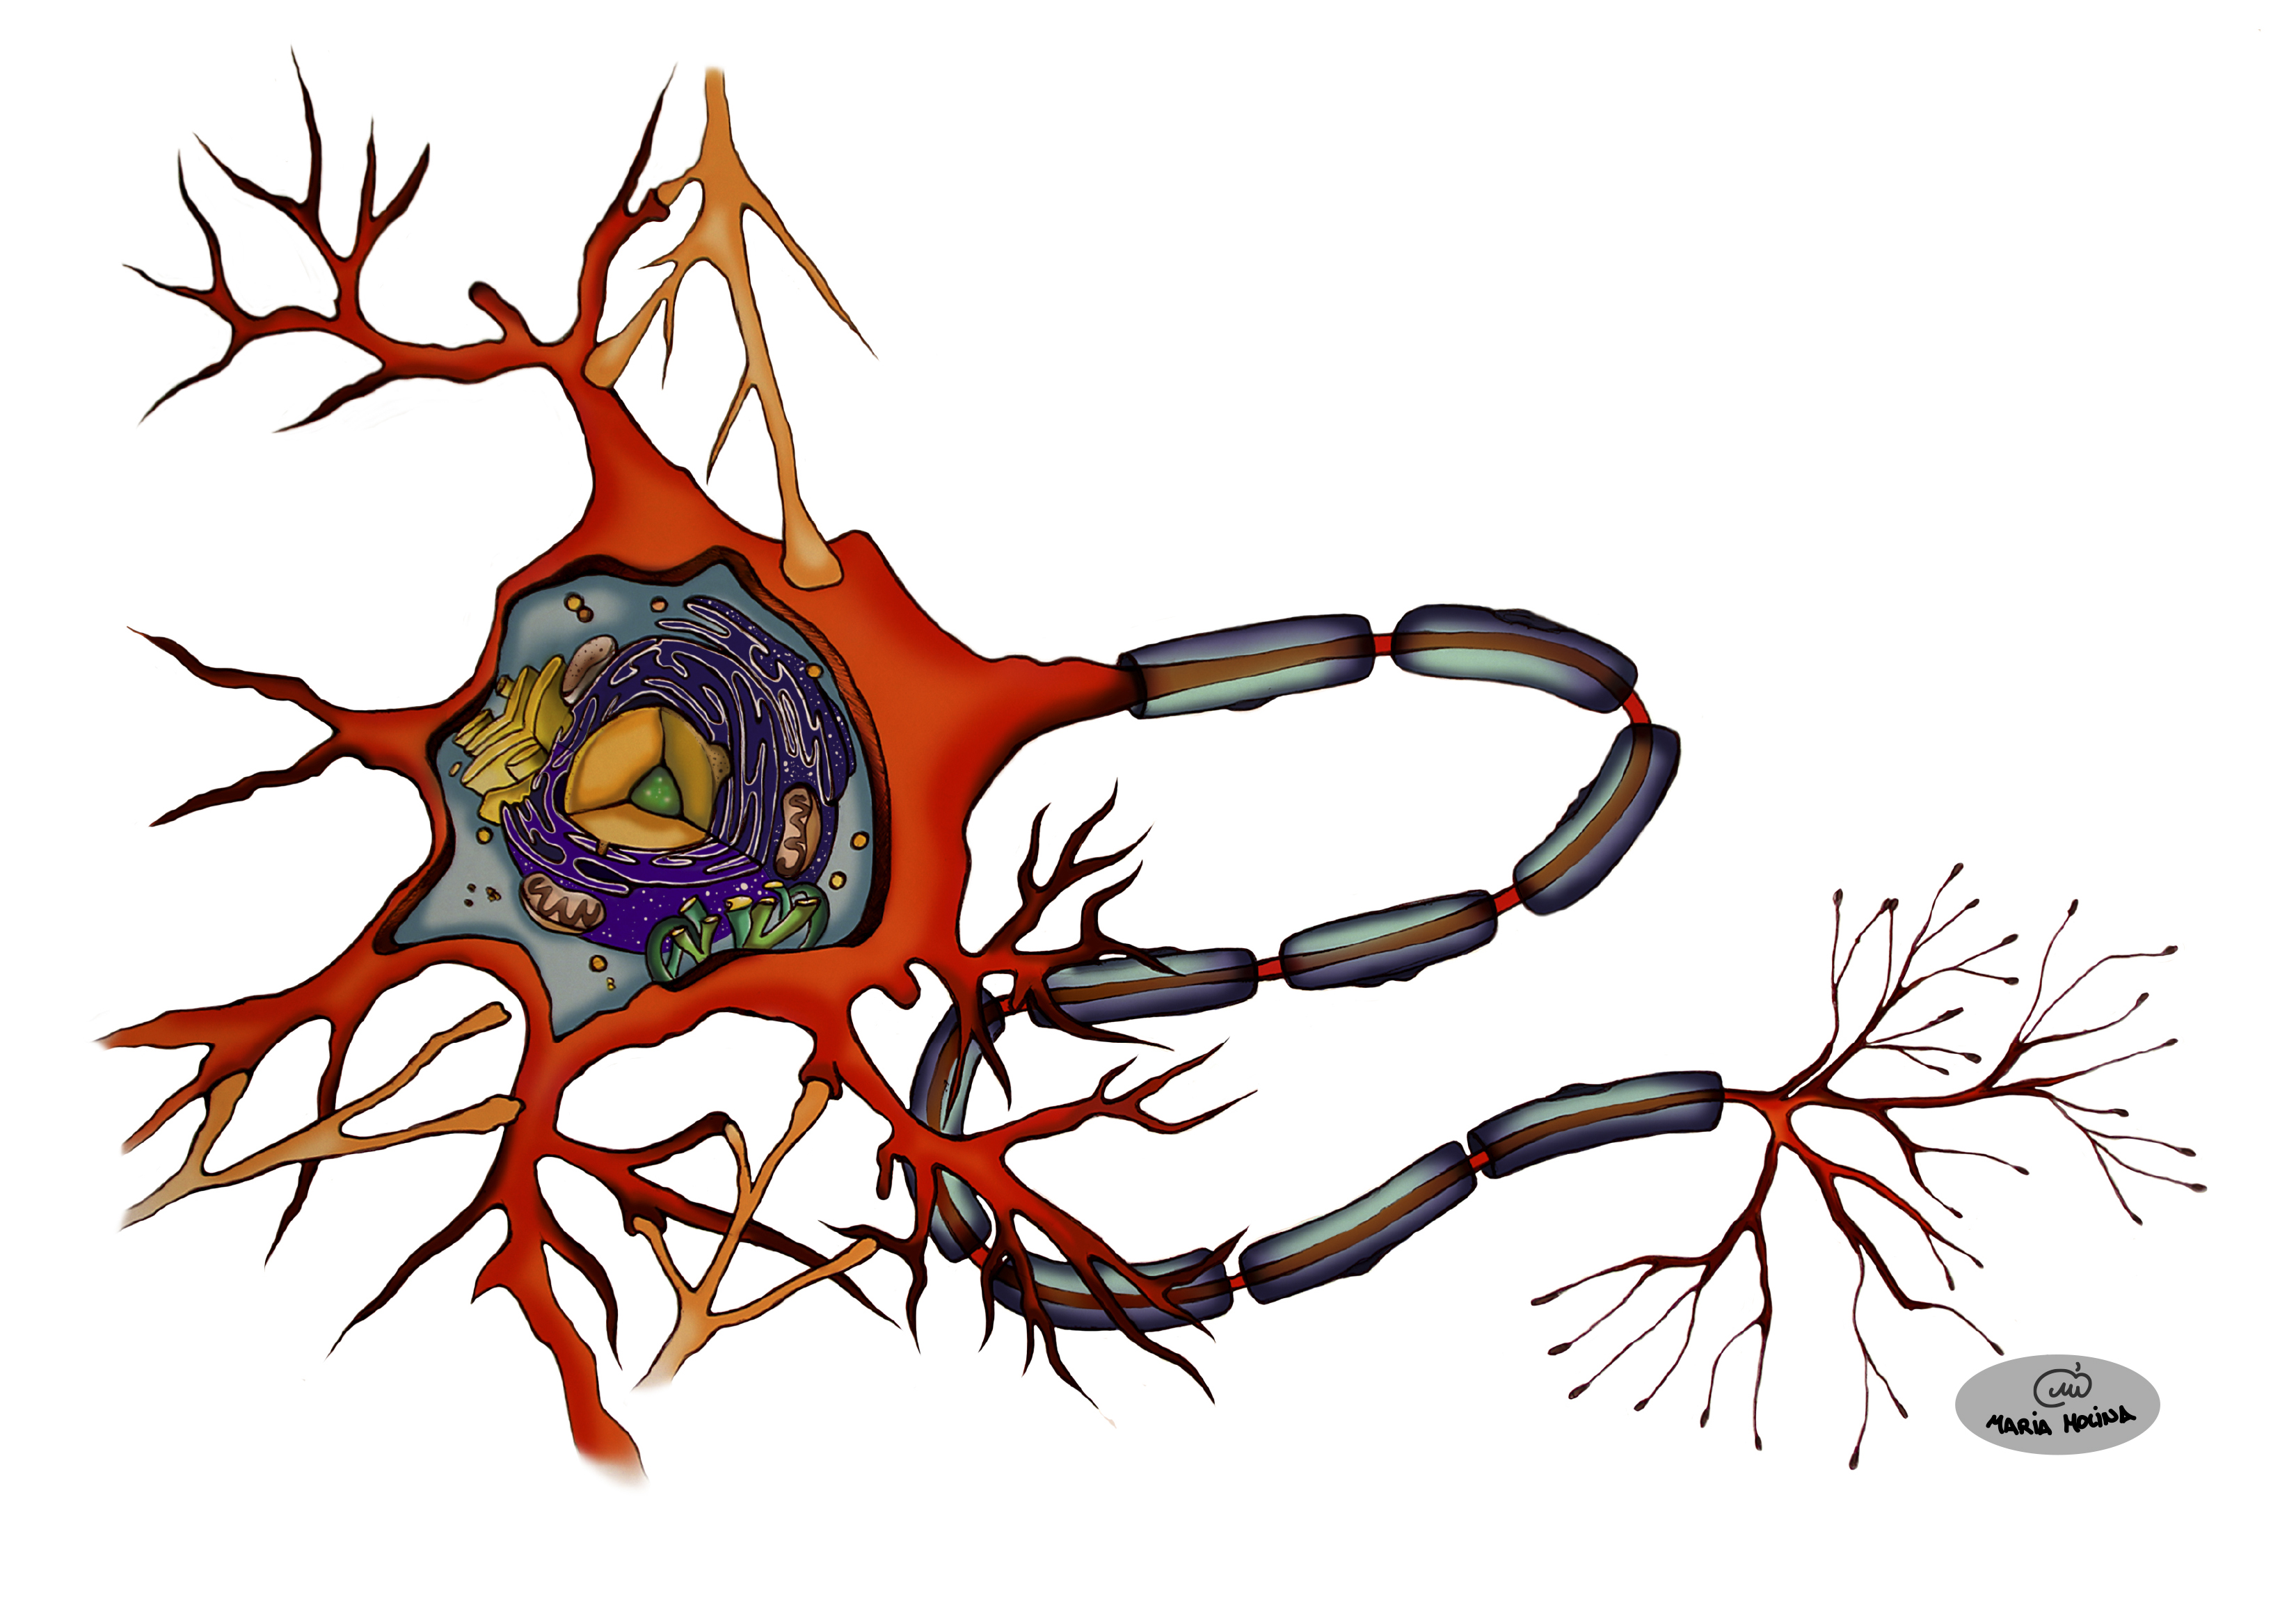 Функции нейронов: как работают и какую задачу выполняют - health, brain and neuroscience